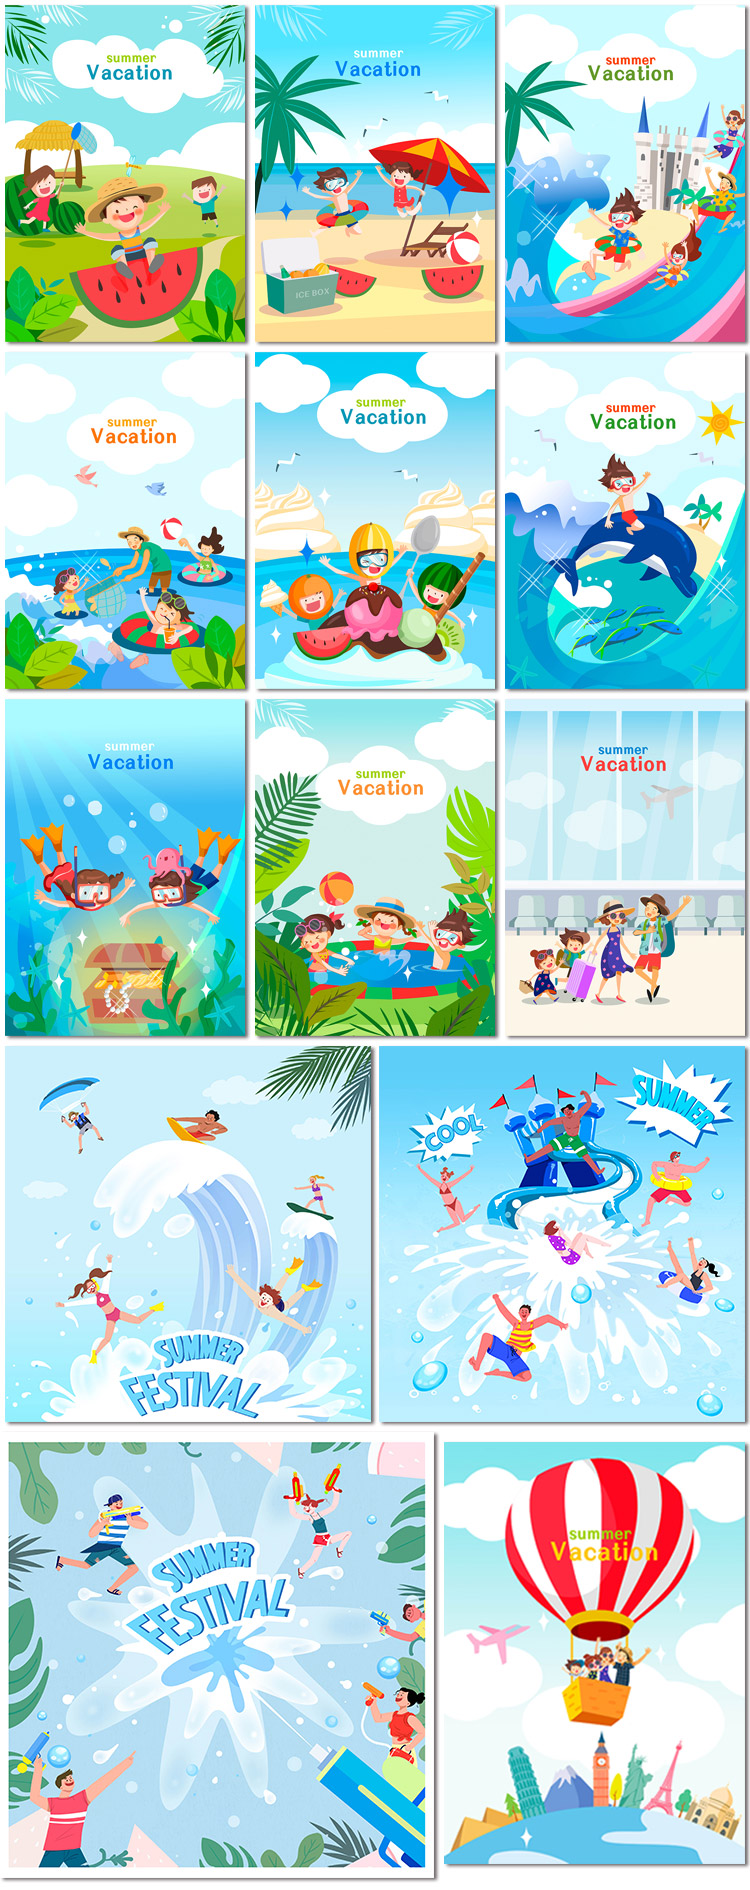 水上乐园夏日游泳假日海洋世界旅行旅游手绘插画海报模板素材设计